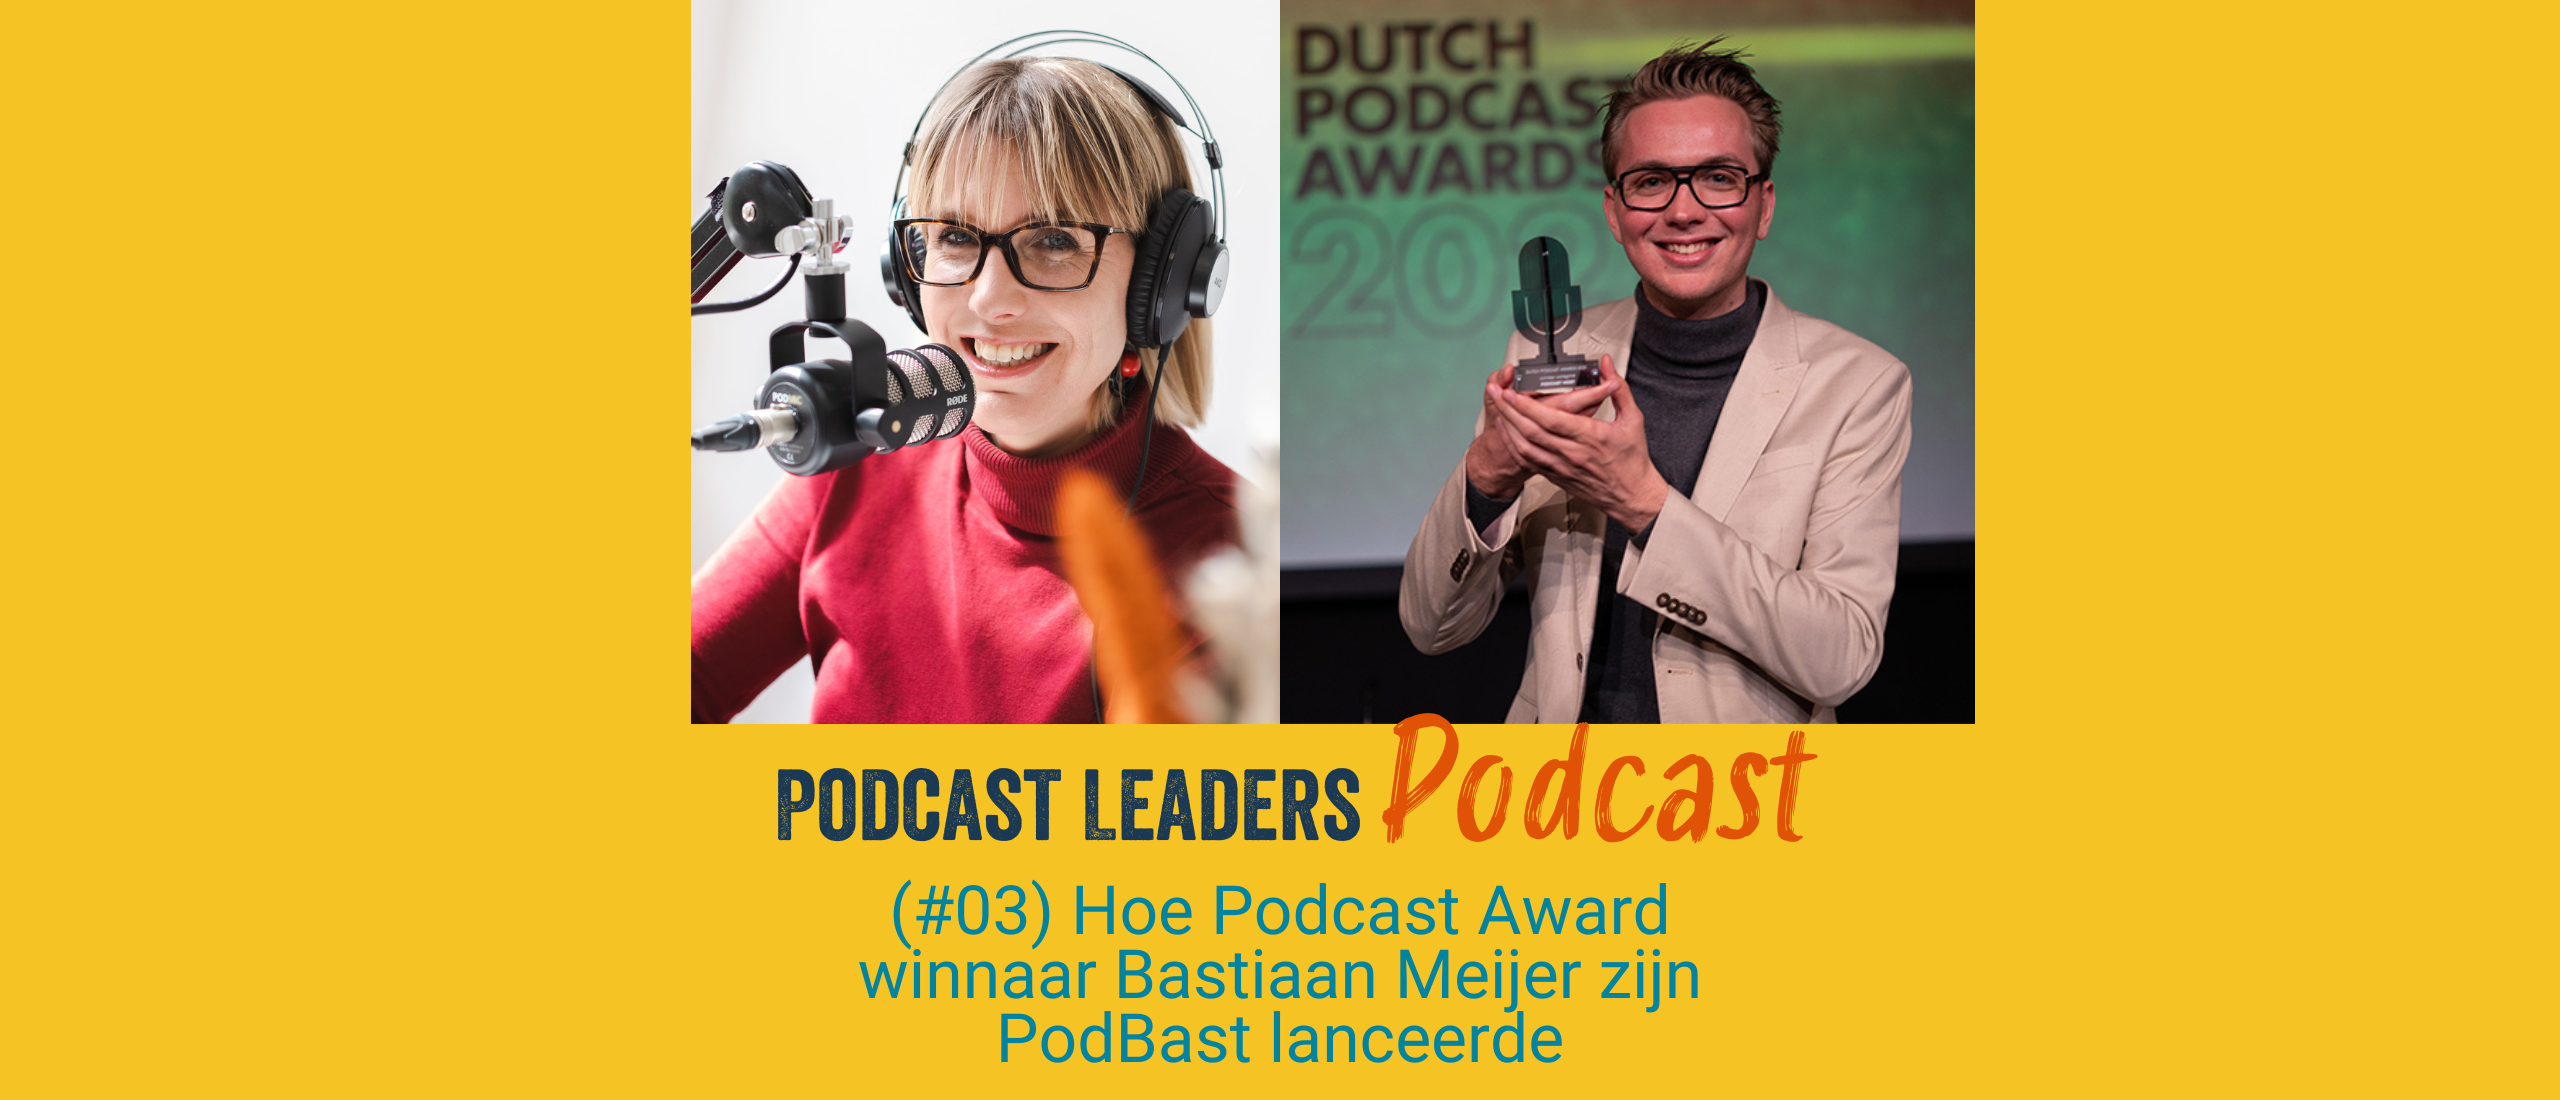 Hoe podcast award winnaar Bastiaan Meijer zijn podcast lanceerde